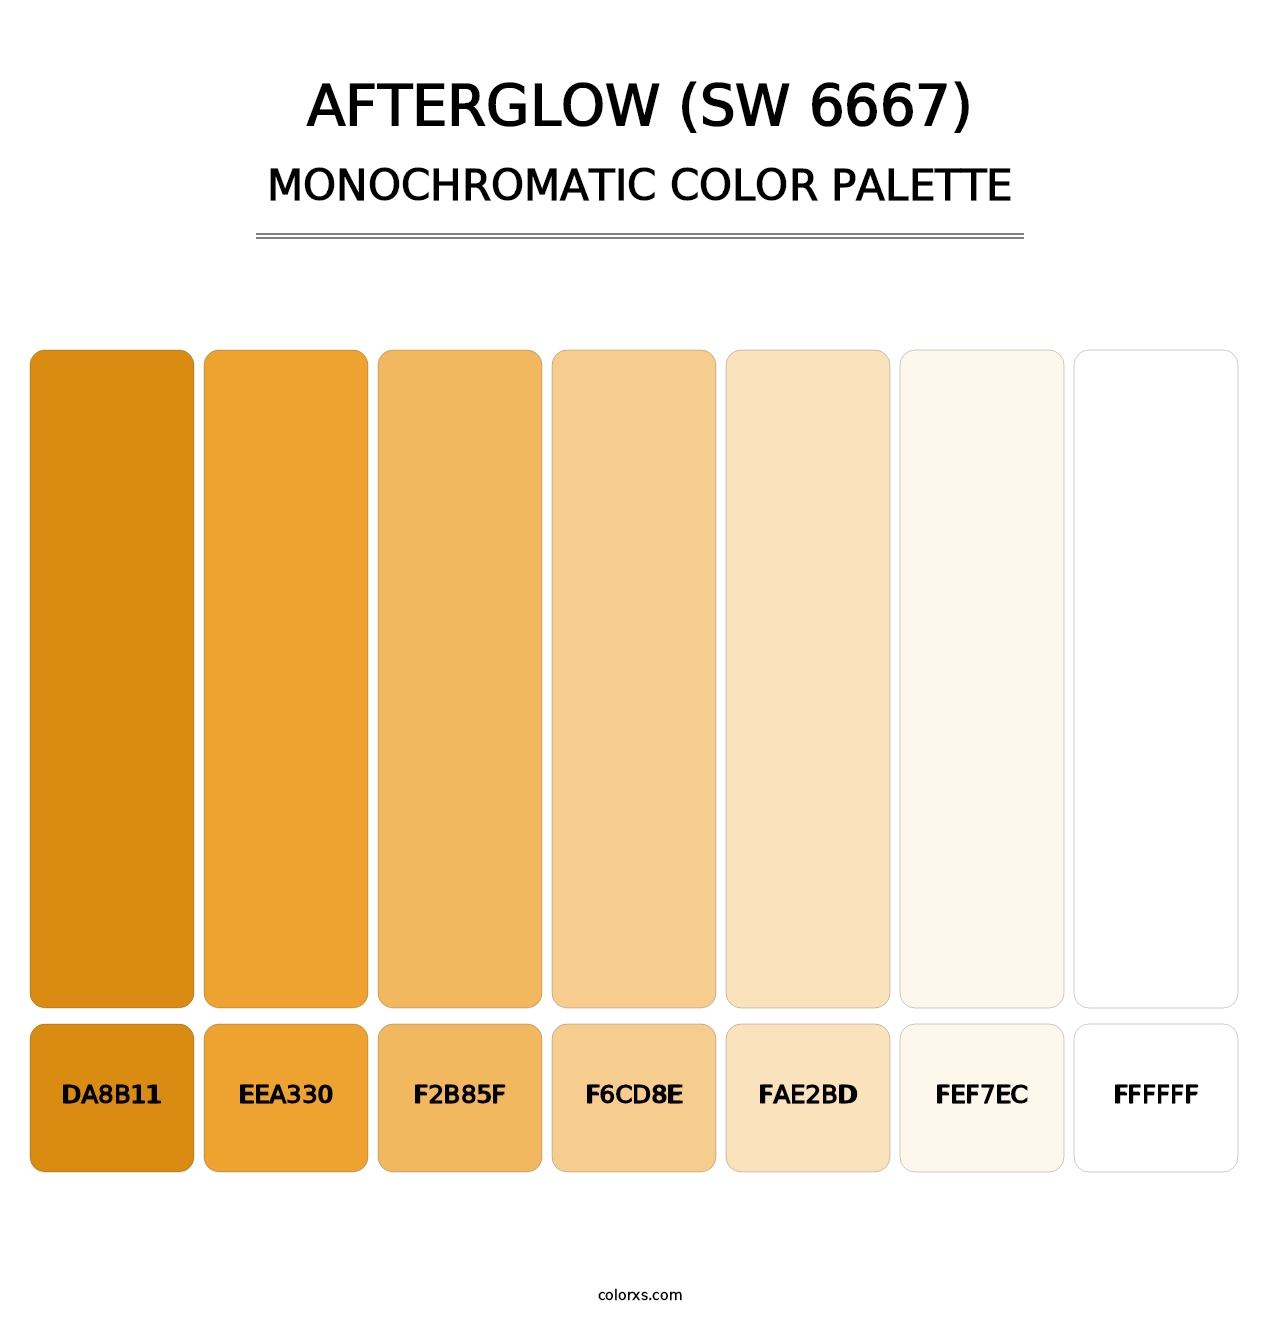 Afterglow (SW 6667) - Monochromatic Color Palette